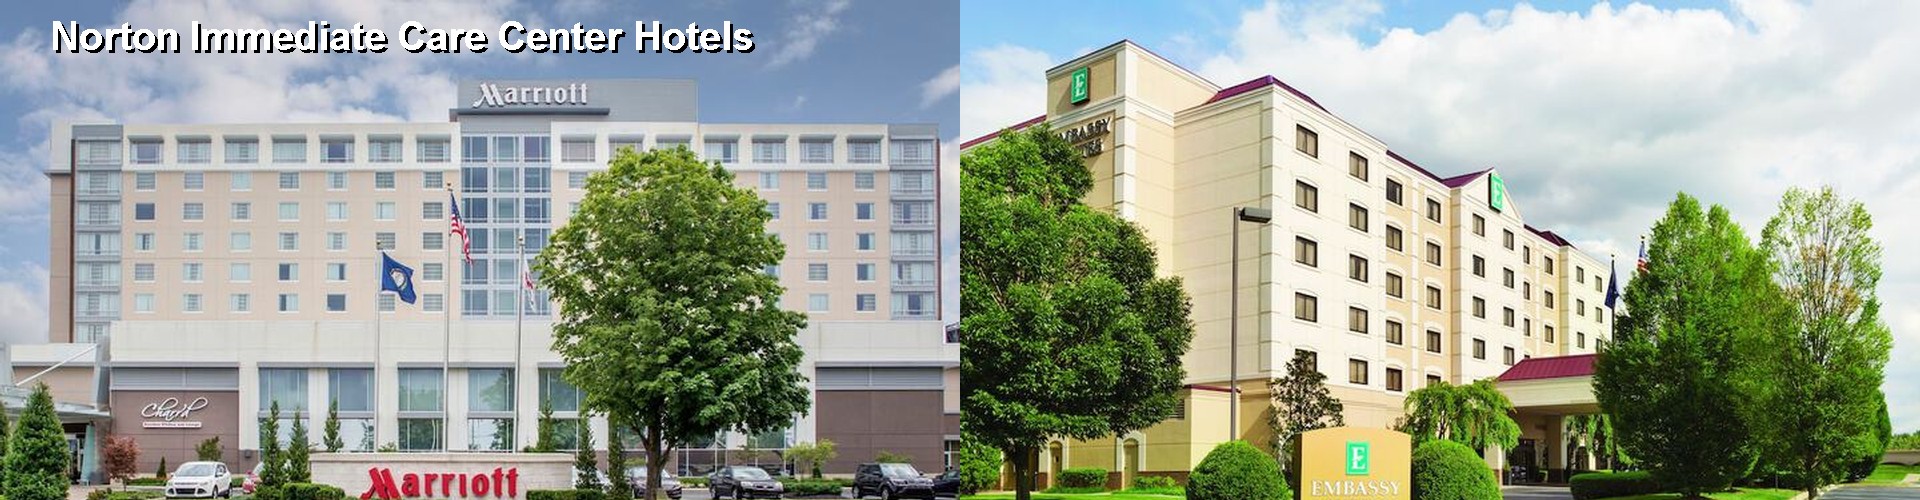 5 Best Hotels near Norton Immediate Care Center